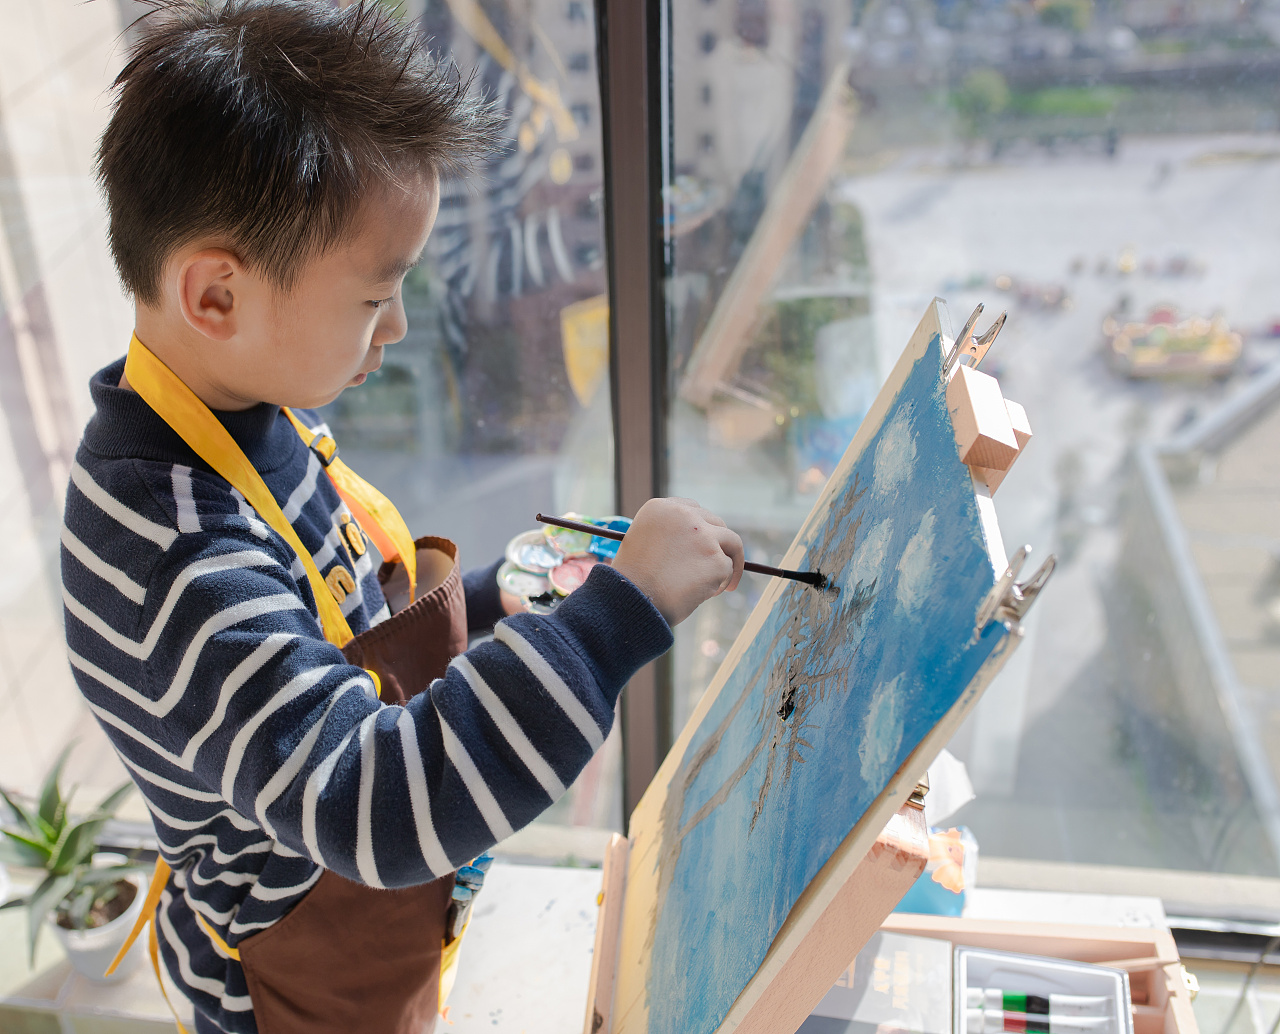 第二届苏州少年儿童中国画现场绘画大赛圆满落幕新闻一览-樱花彩色笔